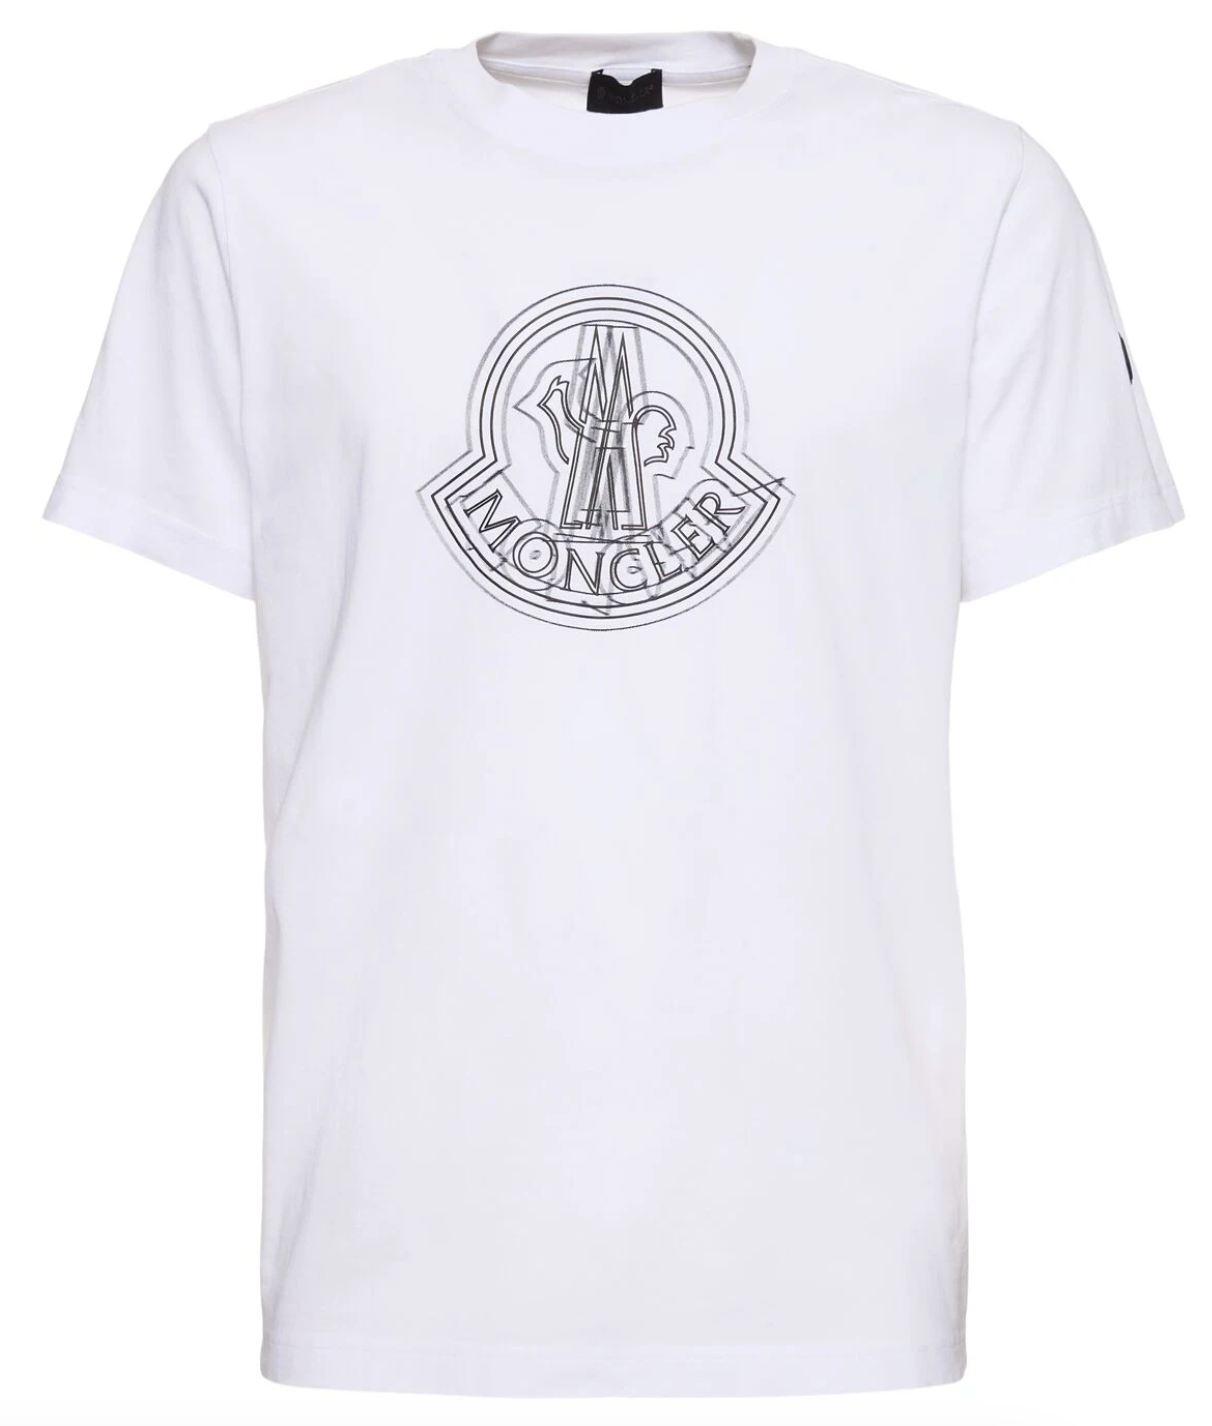 Moncler Main Logo Cotton T-shirt White Front Lodz POlska